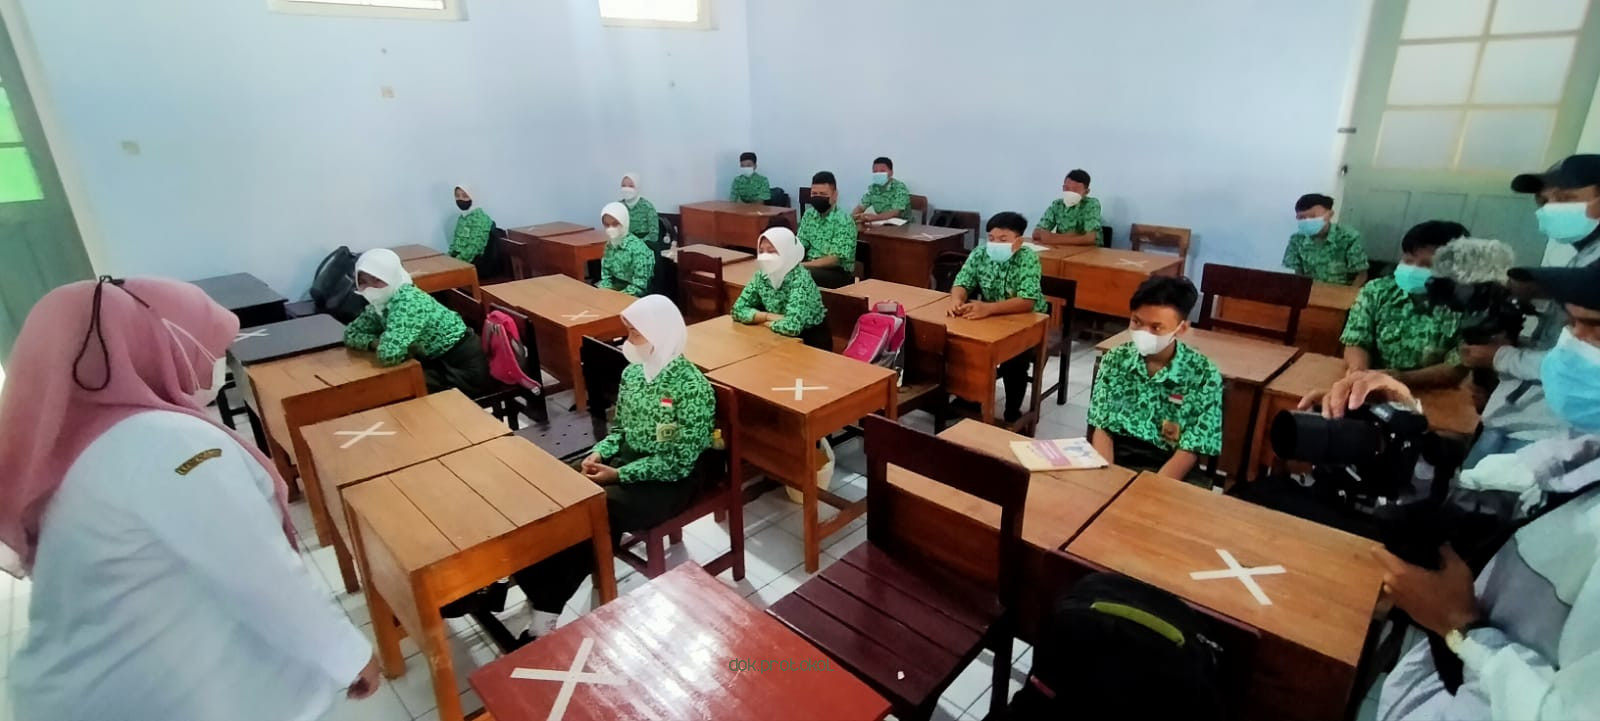 Sebulan PTMT di Kabupaten Pasuruan, Tak ada Laporan Kasus Covid-19 di Lingkungan Sekolah 